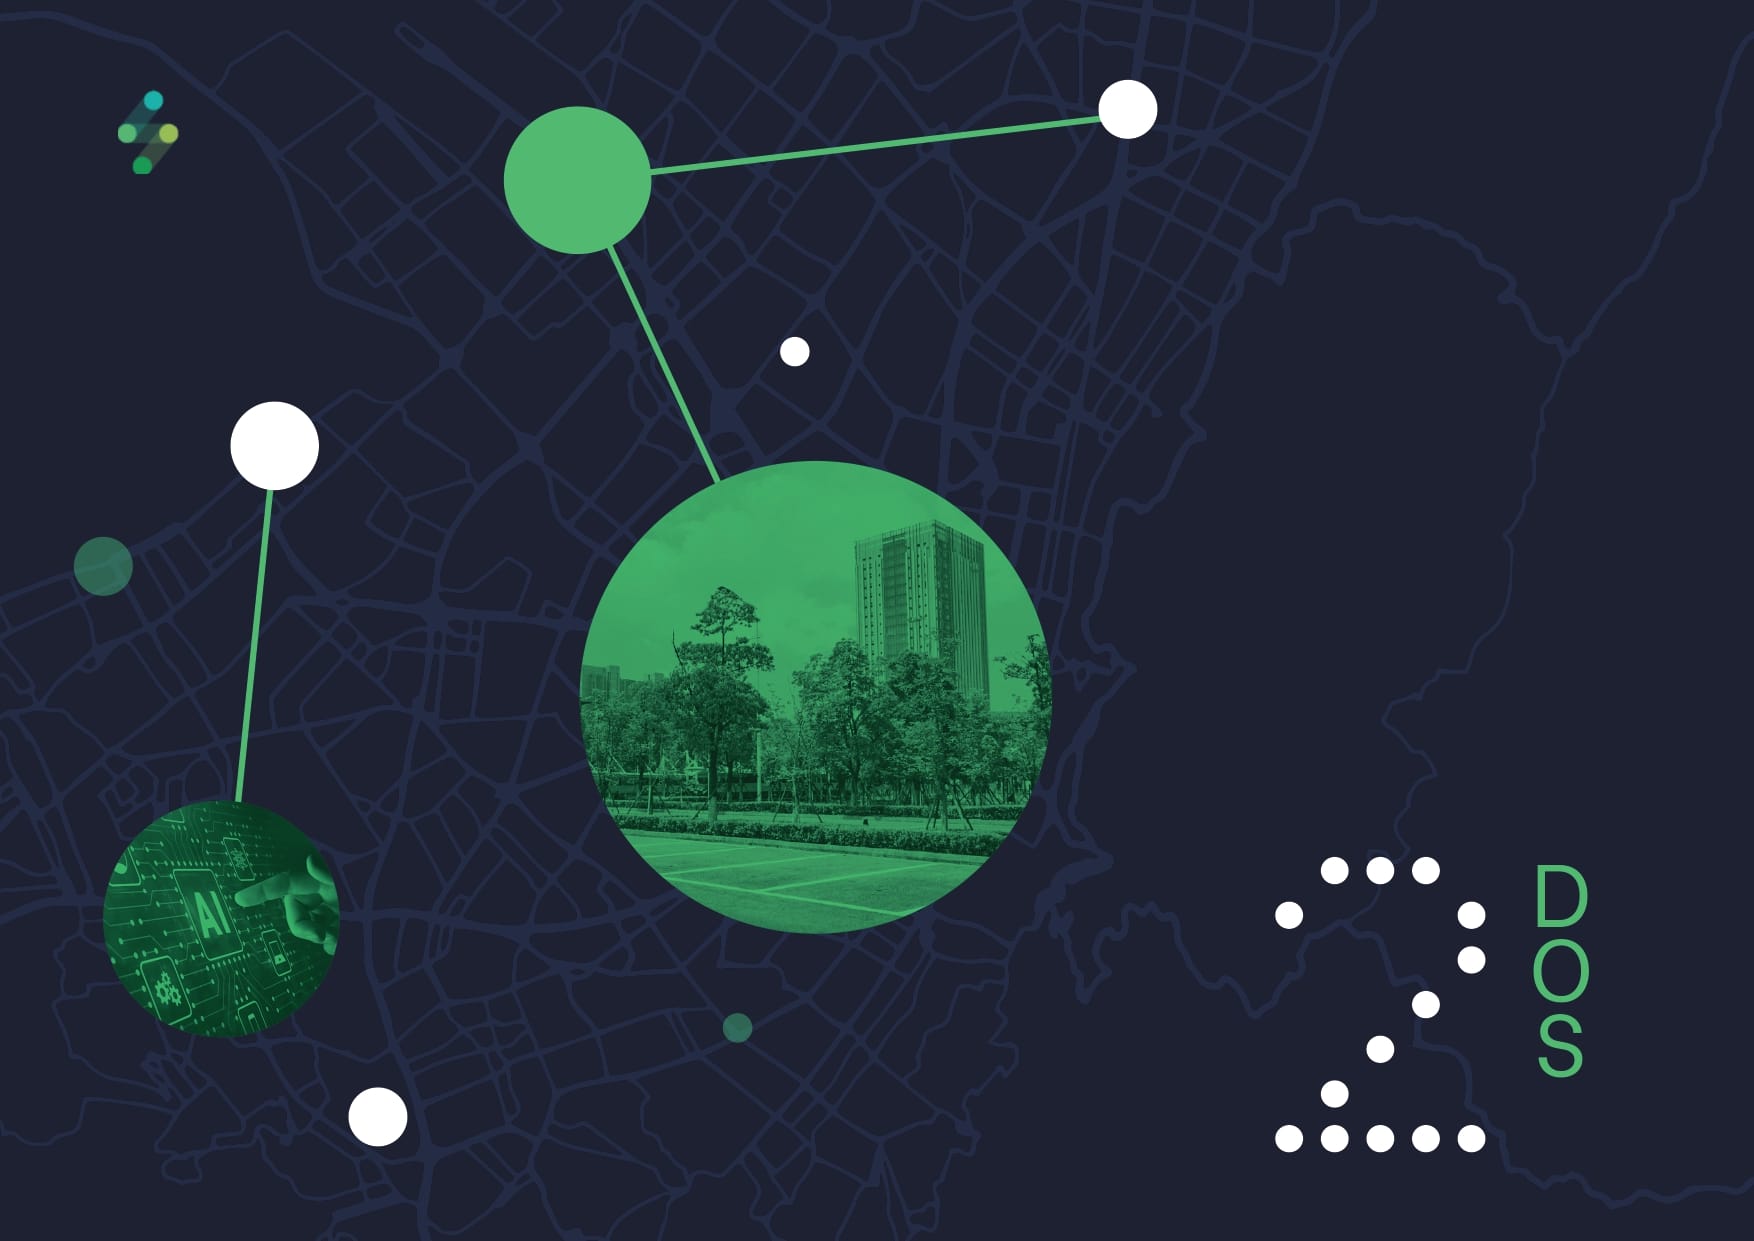 Superposición gráfica de múltiples nodos conectados en un mapa digital, con una imagen insertada de la escena de un parque de la ciudad, destacando "Te presentamos los puntos más relevantes de nuestra gestión durante el año 202